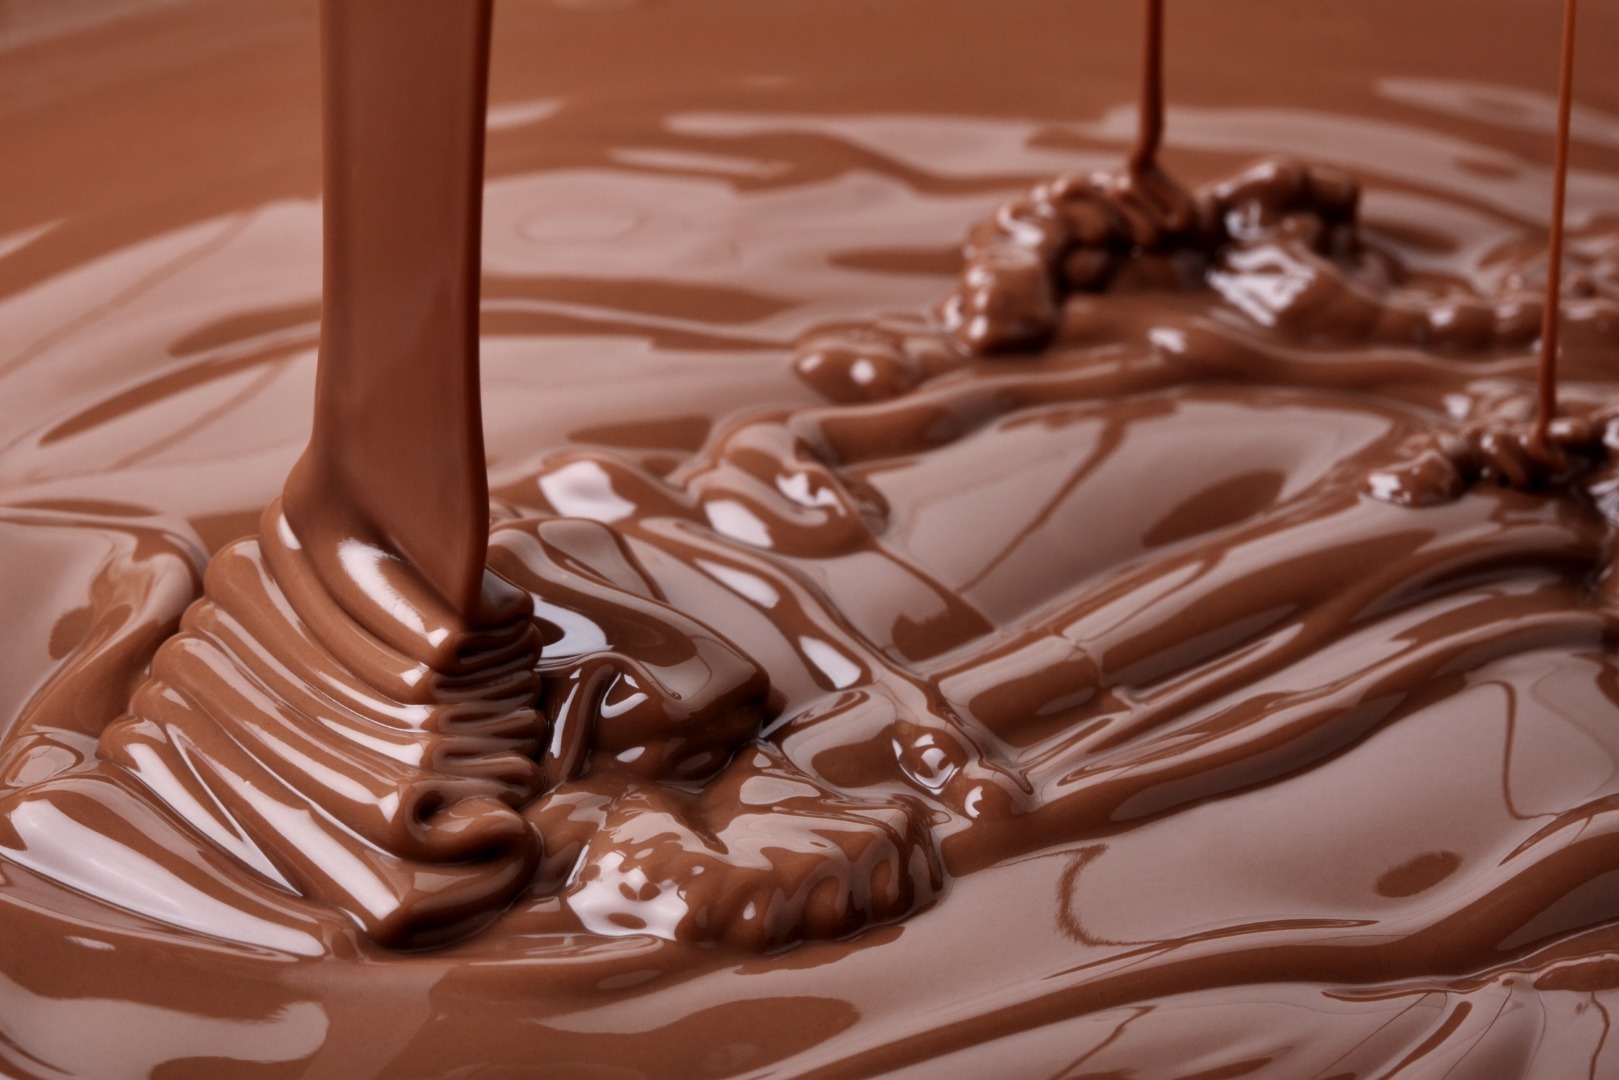 Ciocolata ar putea dispărea complet în următorii 30 de ani